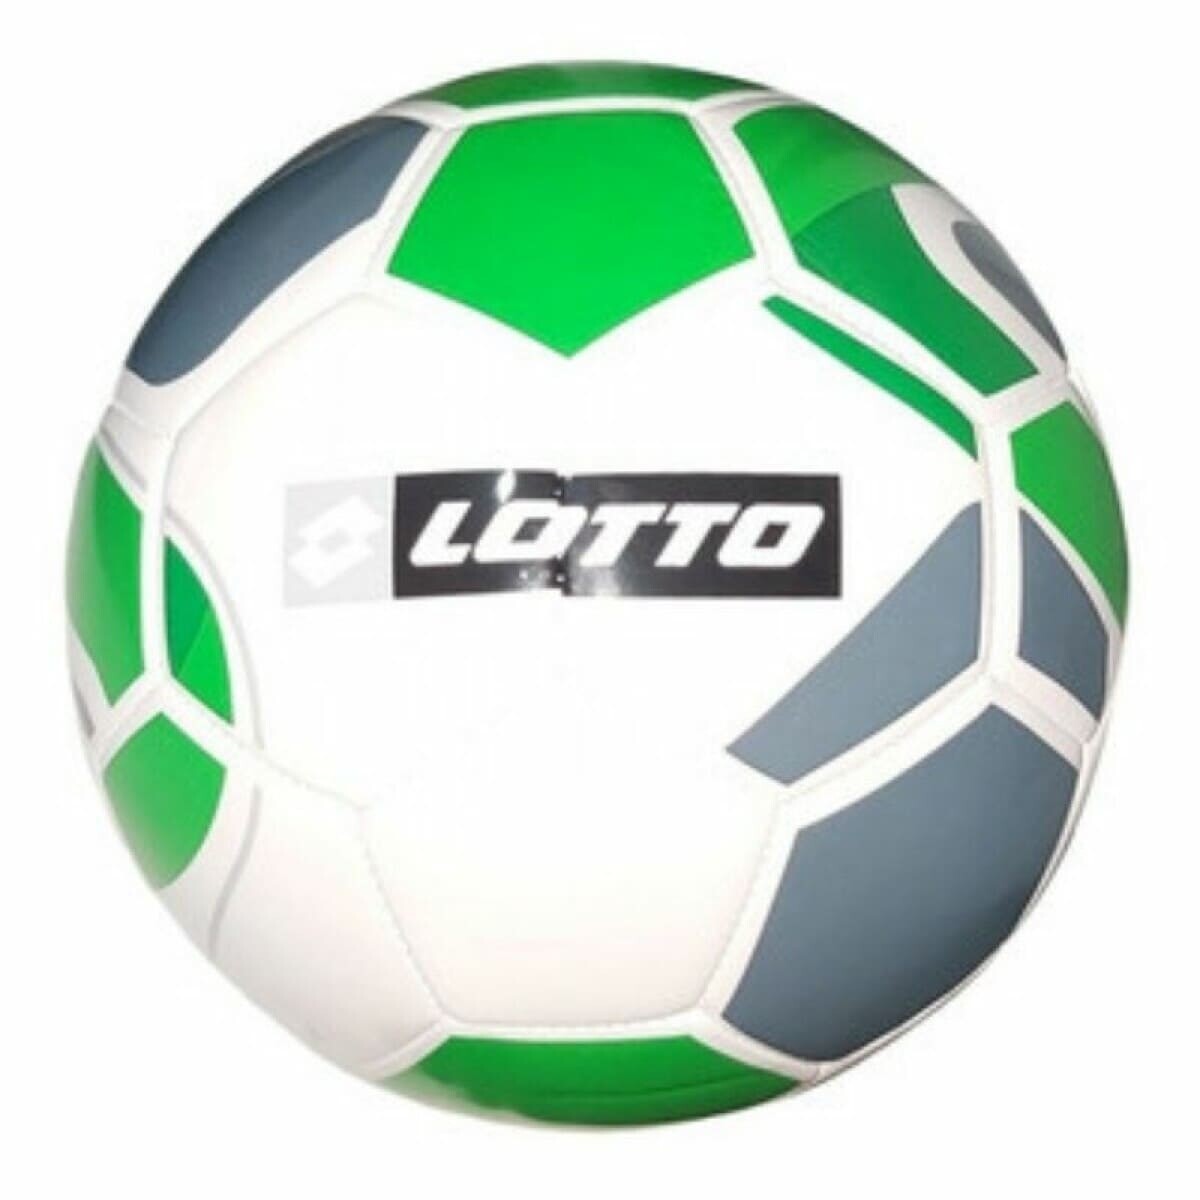 Pelota Lotto Futbol Nº5 Ciao Blanco/Verde - S/C 